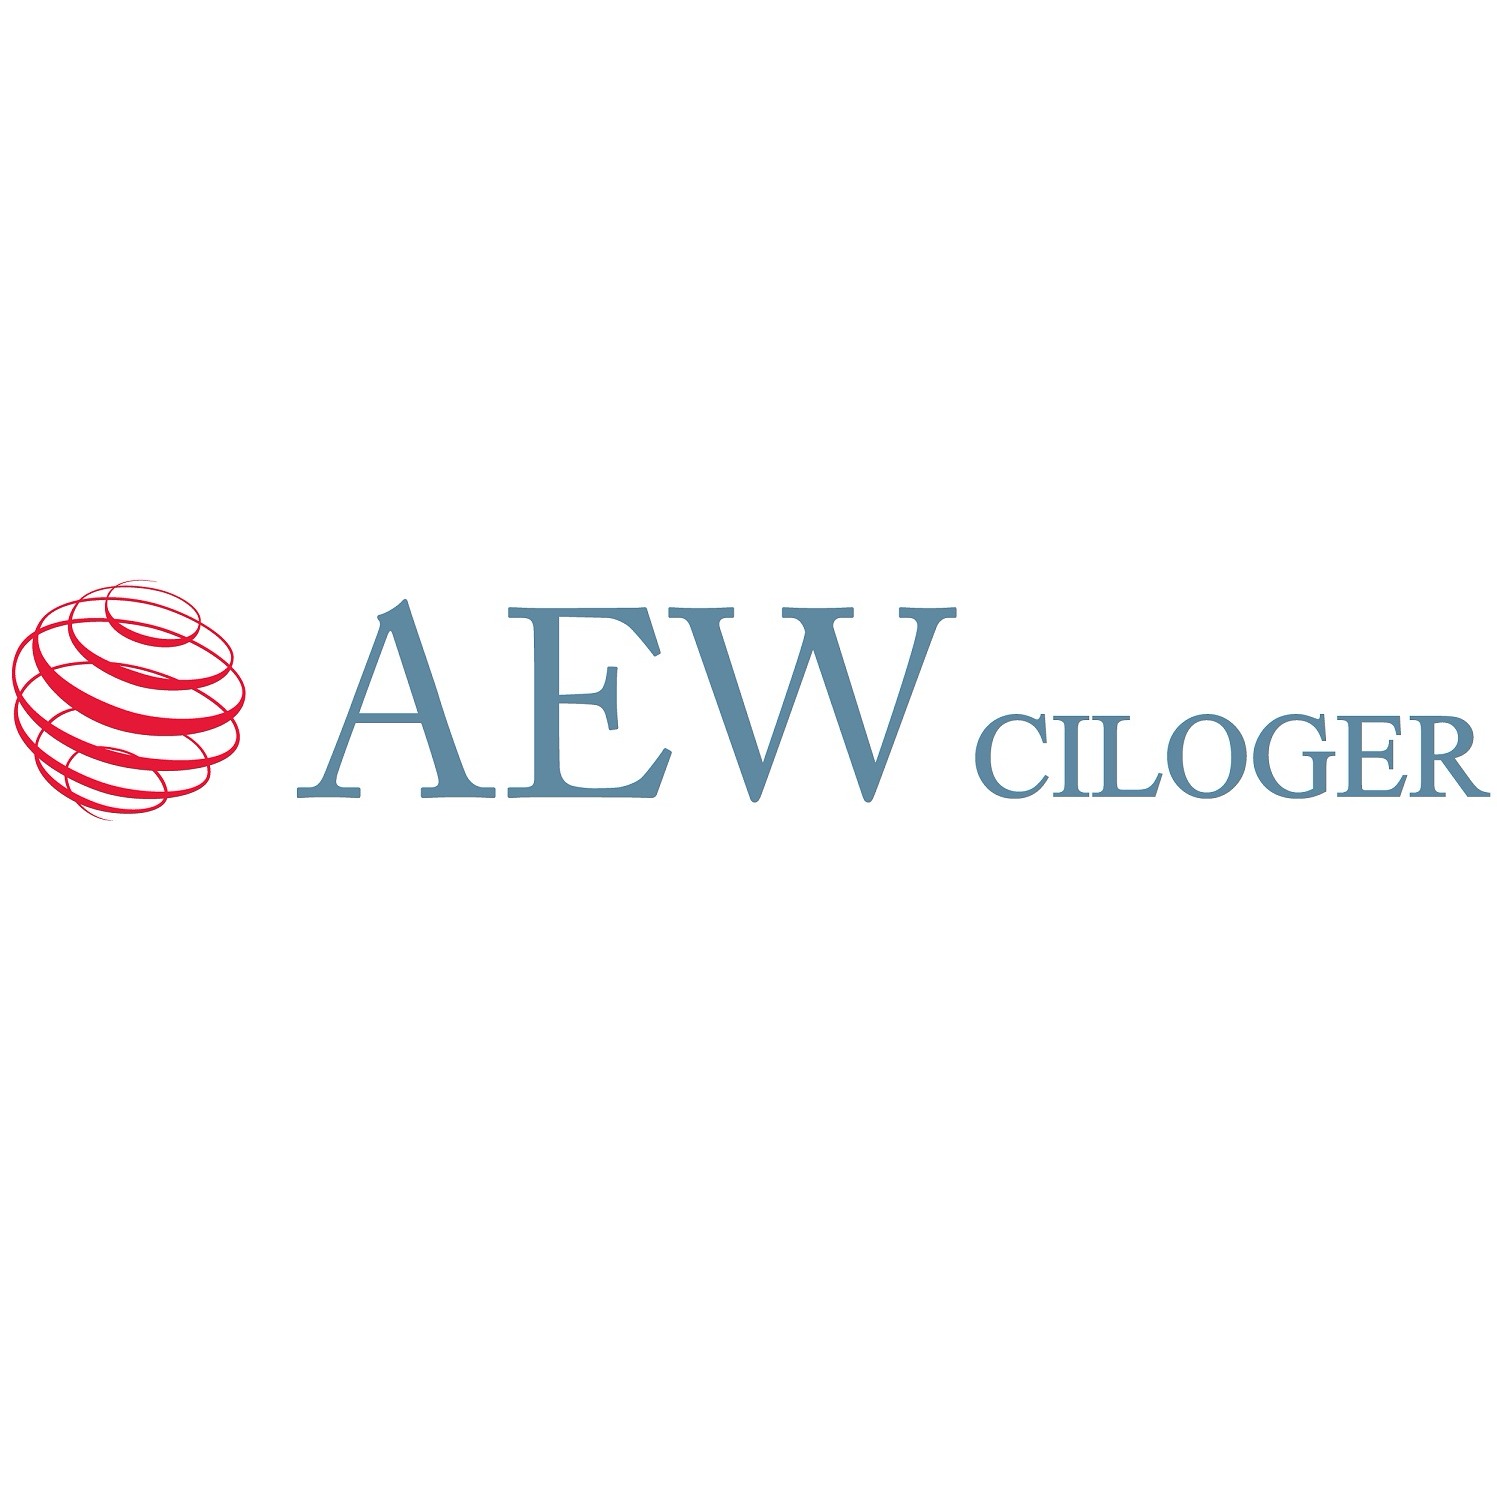 the AEW Ciloger logo.